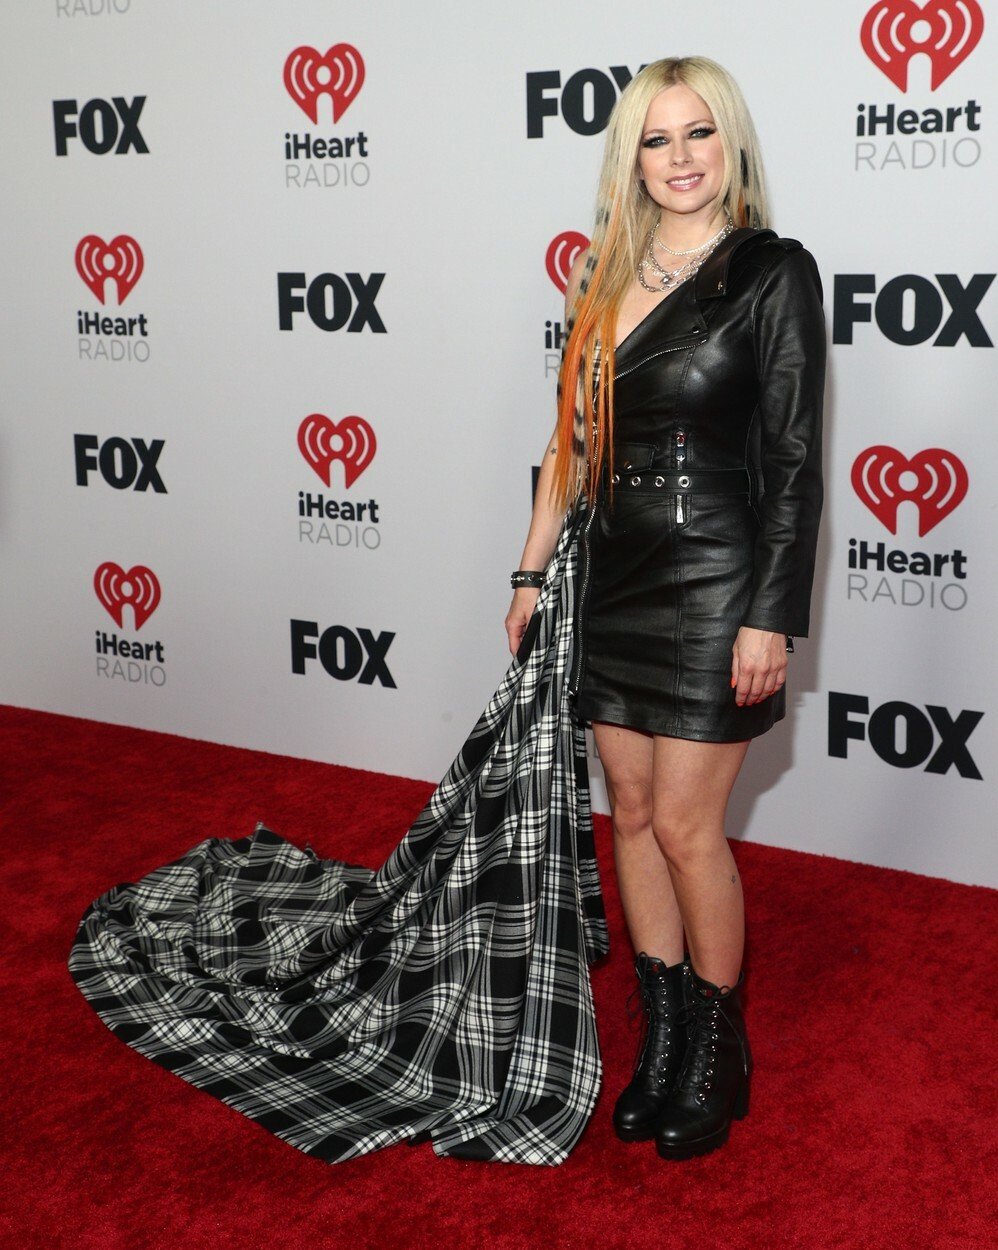 Ceny iHeartRadio - Avril Lavigne